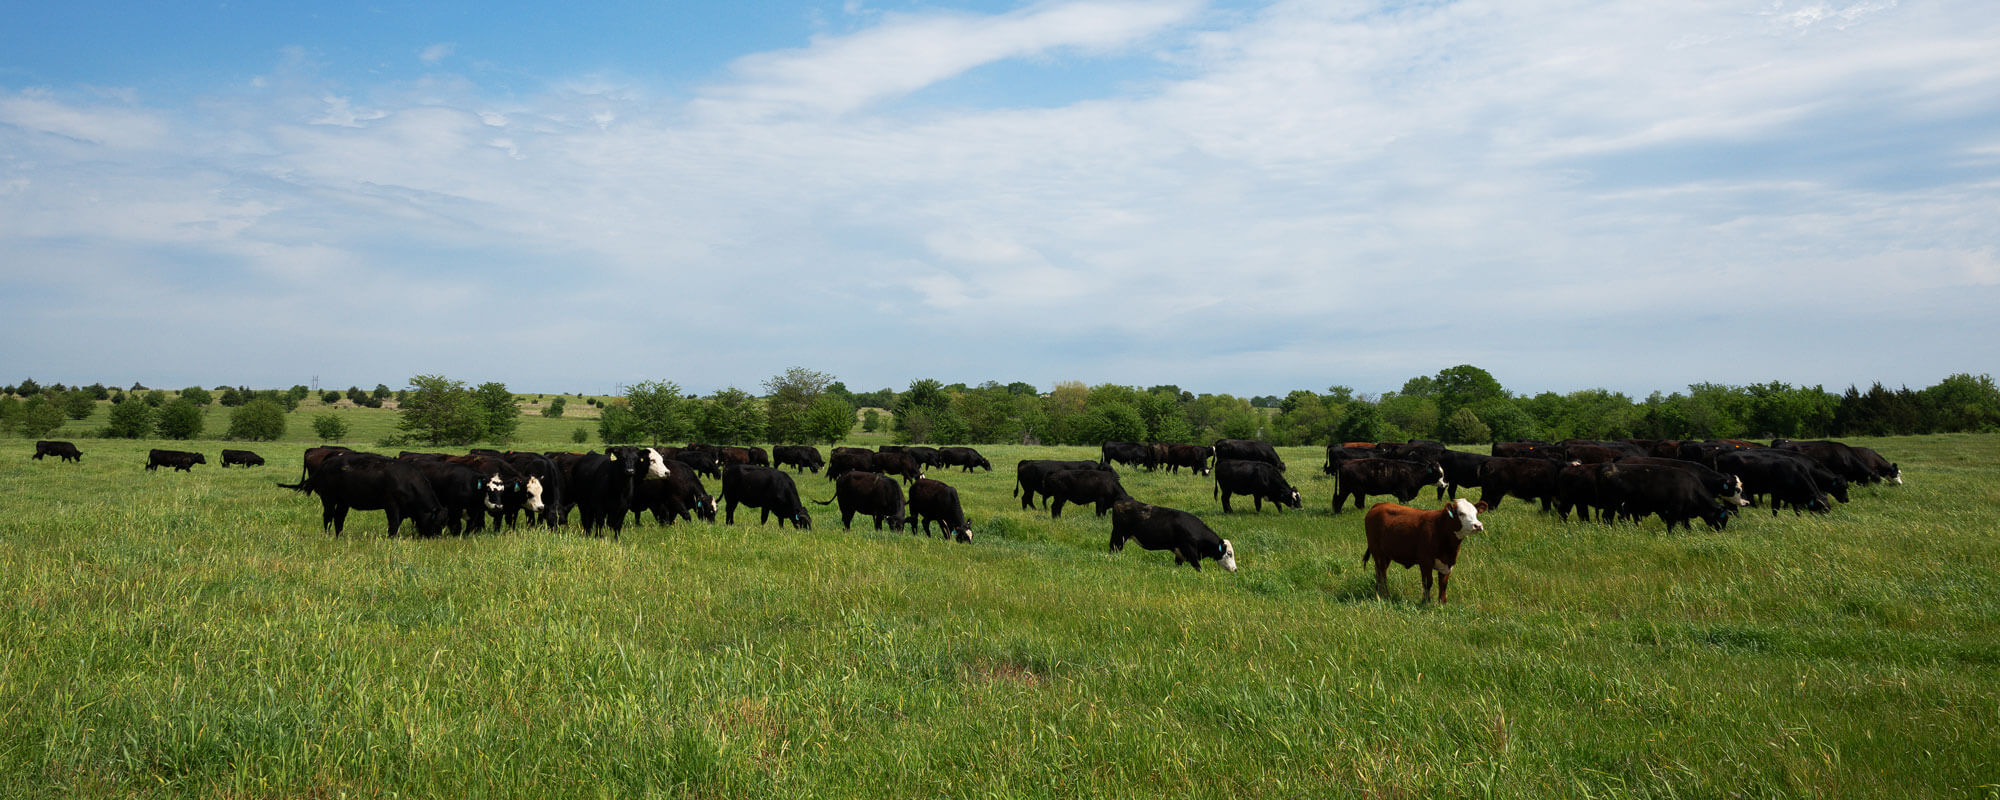 Cattle grazing under an open sky.